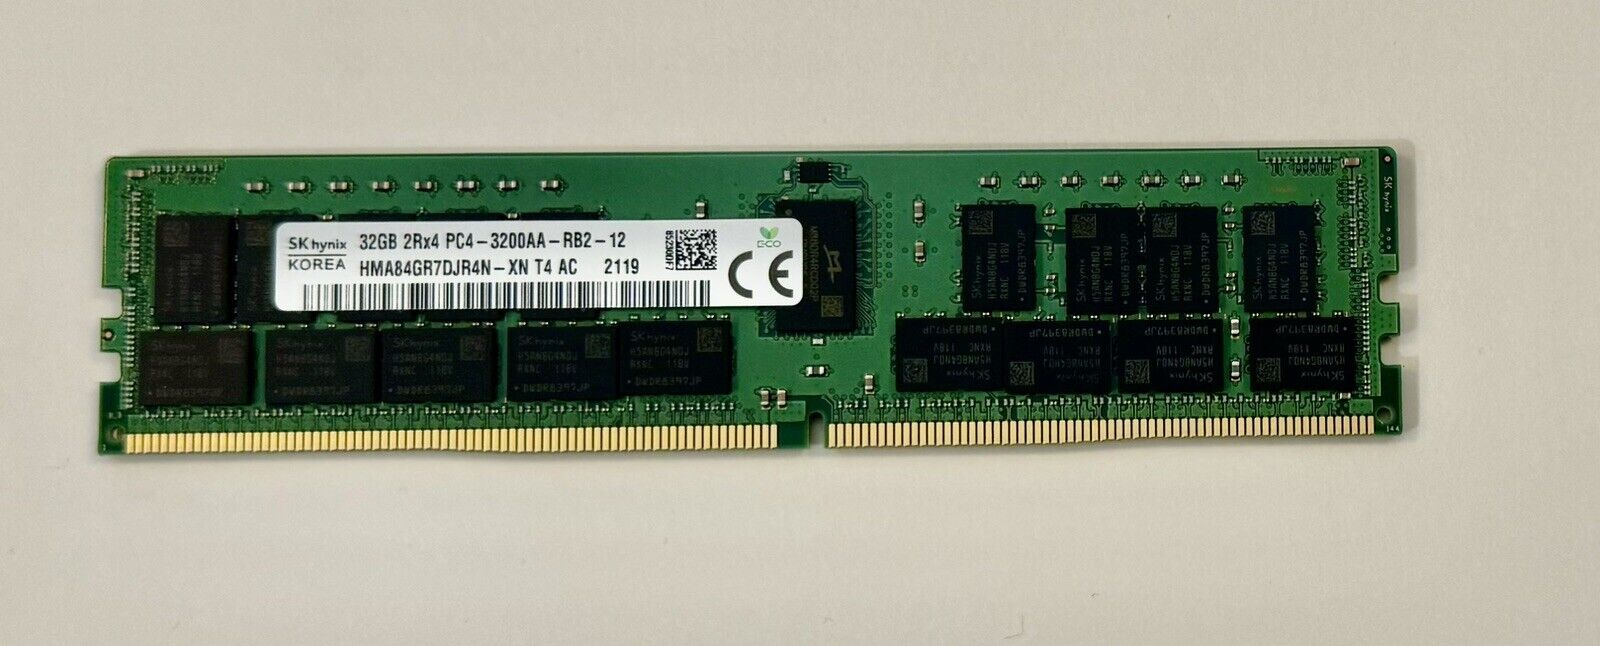 SK Hynix 32GB PC4-3200AA-RB2-12 Memory - HMA84GR7DJR4N-XN T4 AC 2119